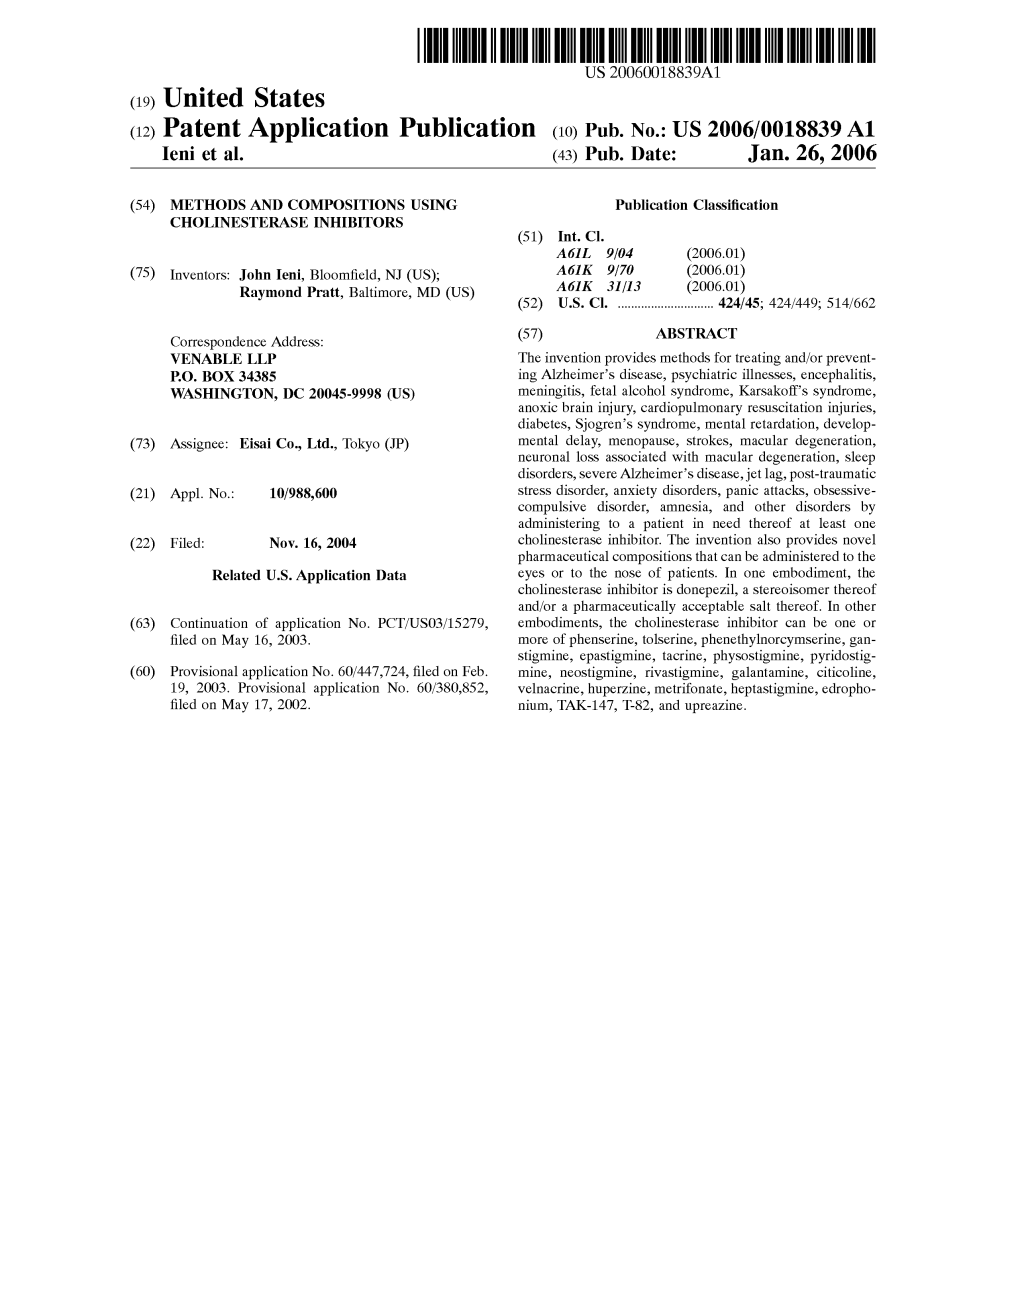 (12) Patent Application Publication (10) Pub. No.: US 2006/0018839 A1 Leni Et Al